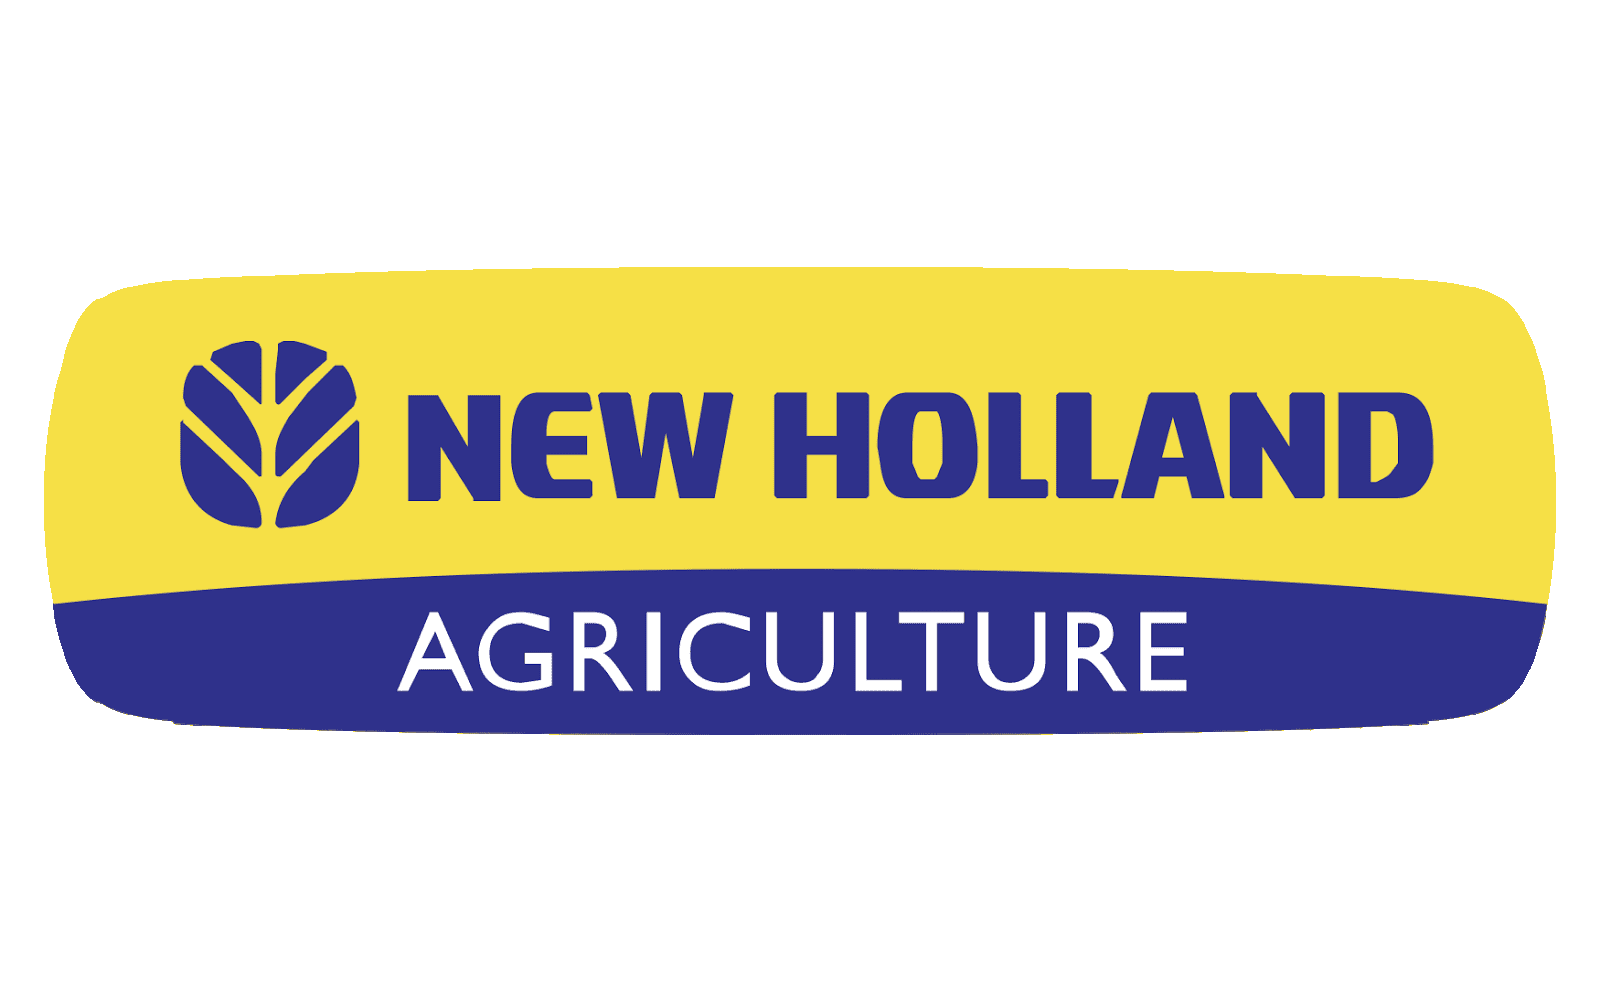 https://1000logos.net/wp-content/uploads/2020/08/New-Holland-Logo.png